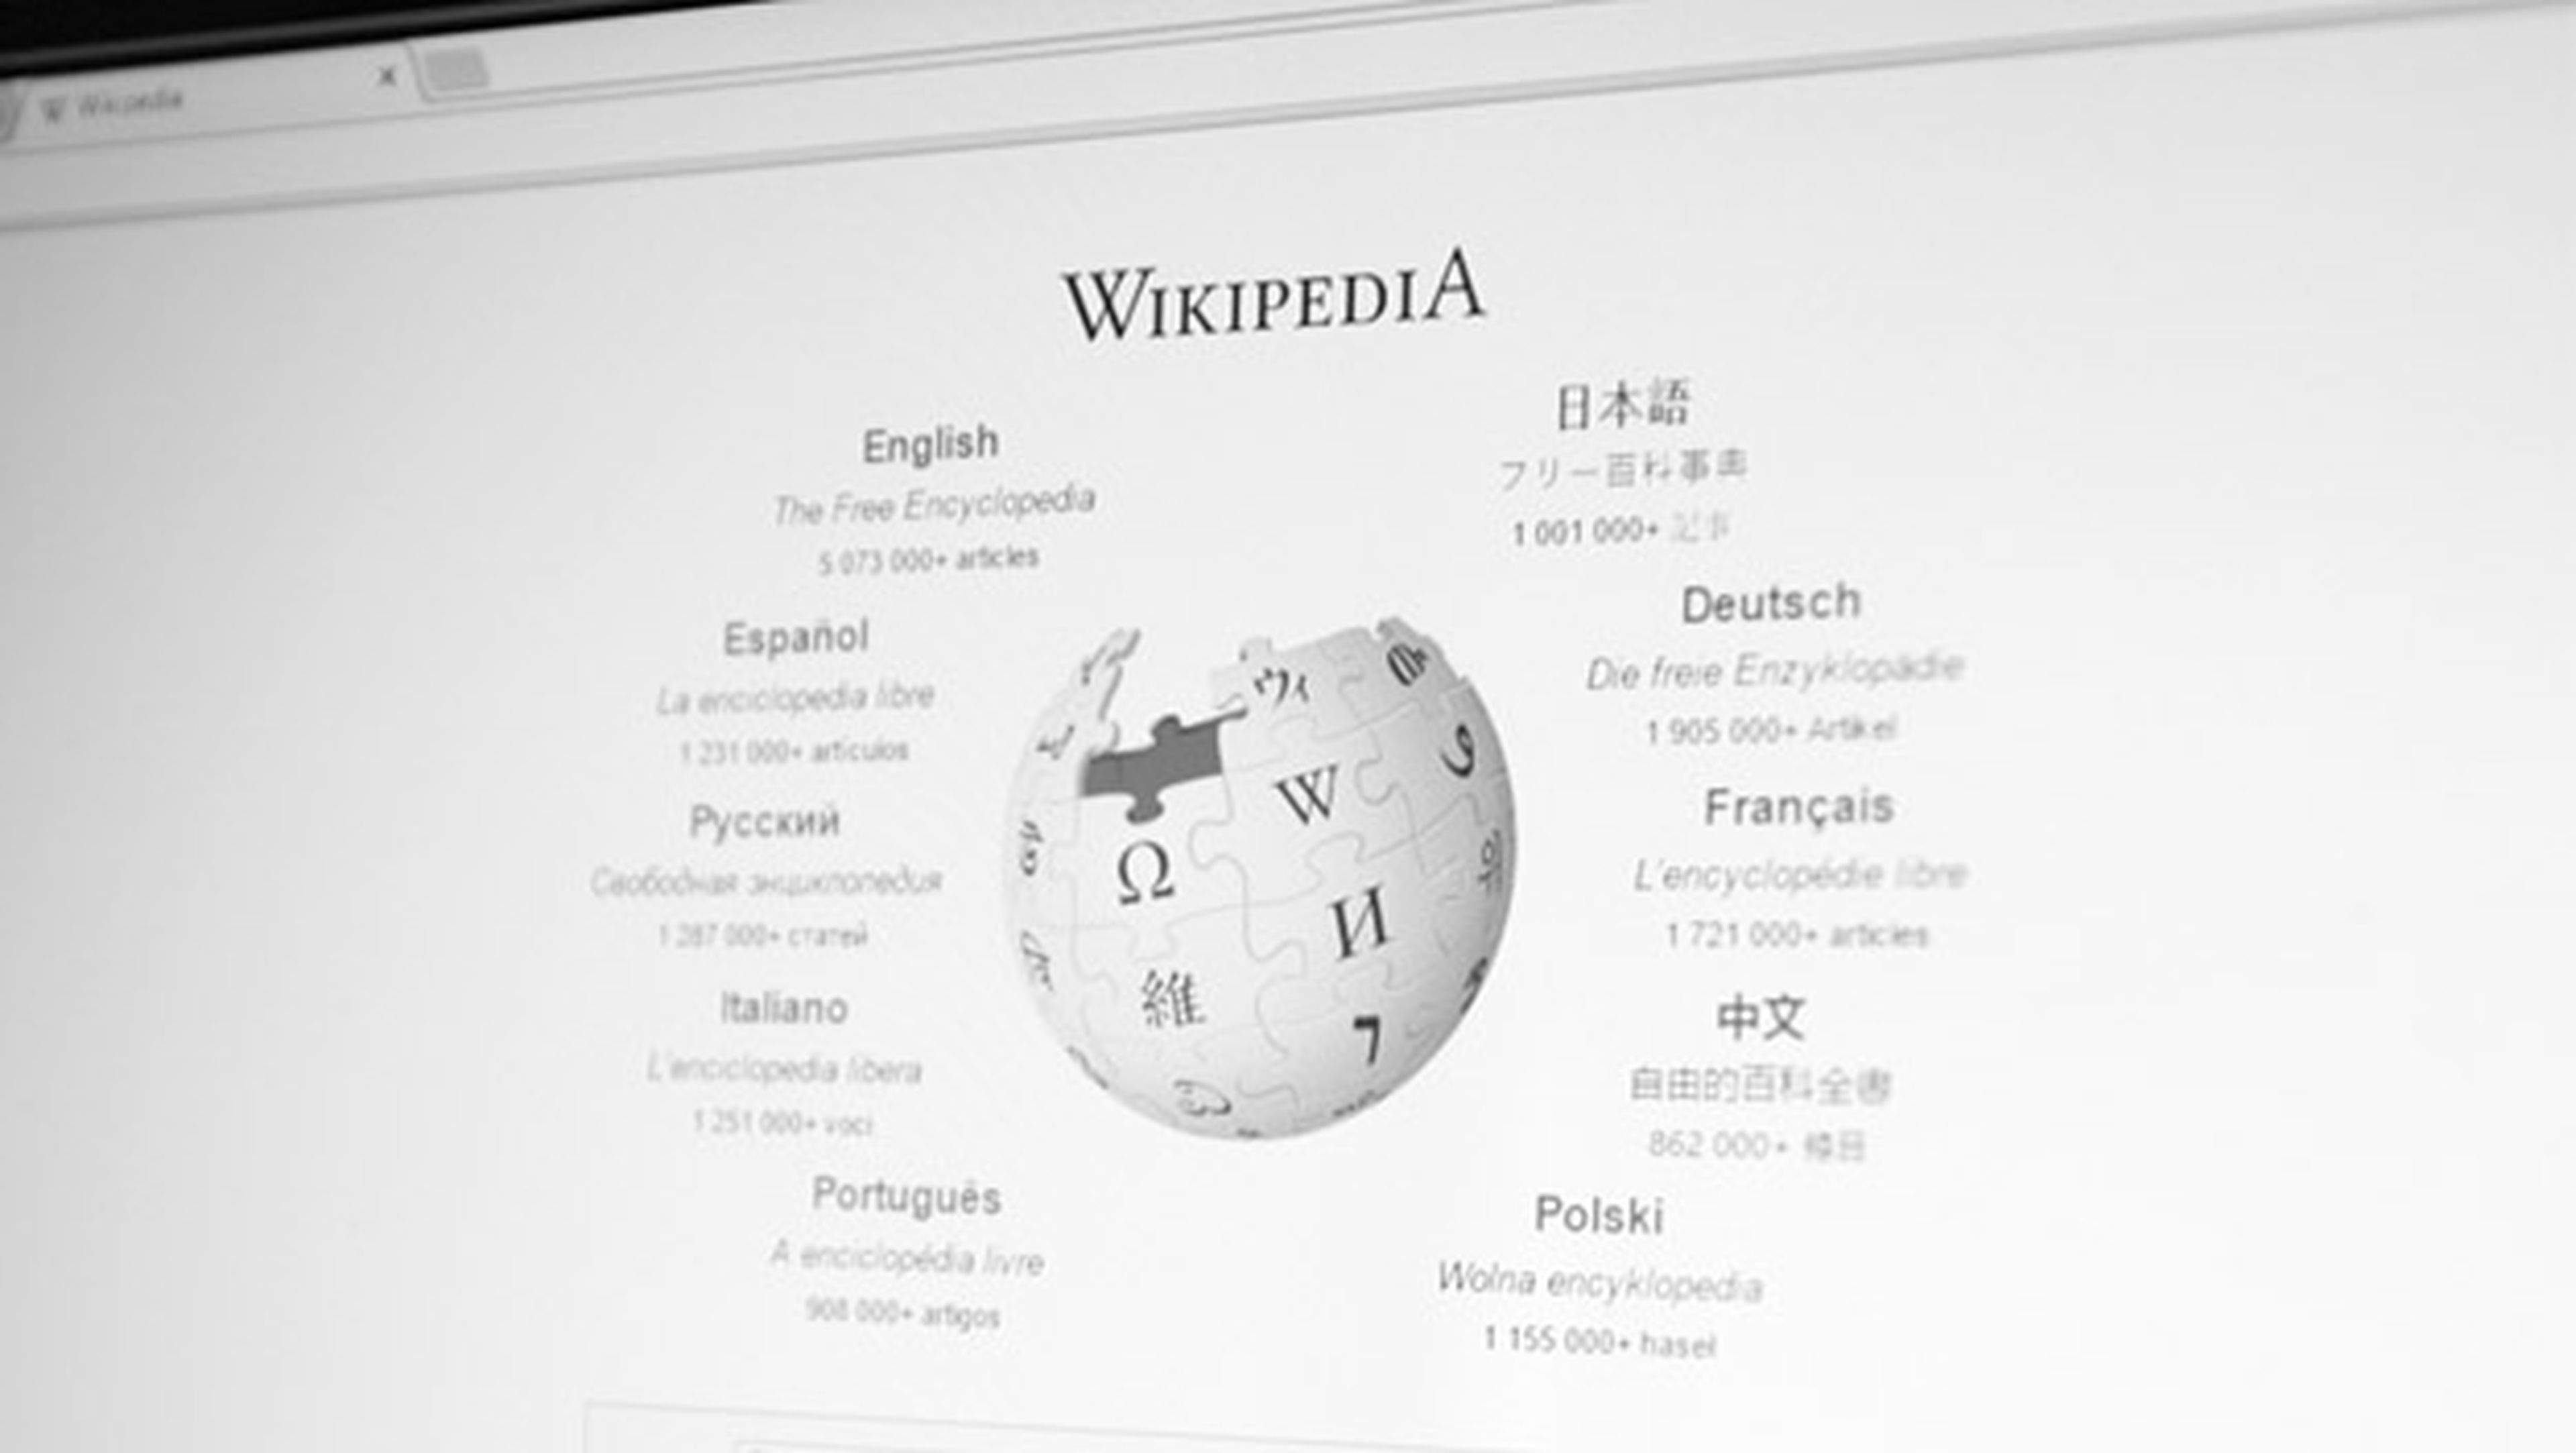 Saltar de artículo en artículo de Wikipedia